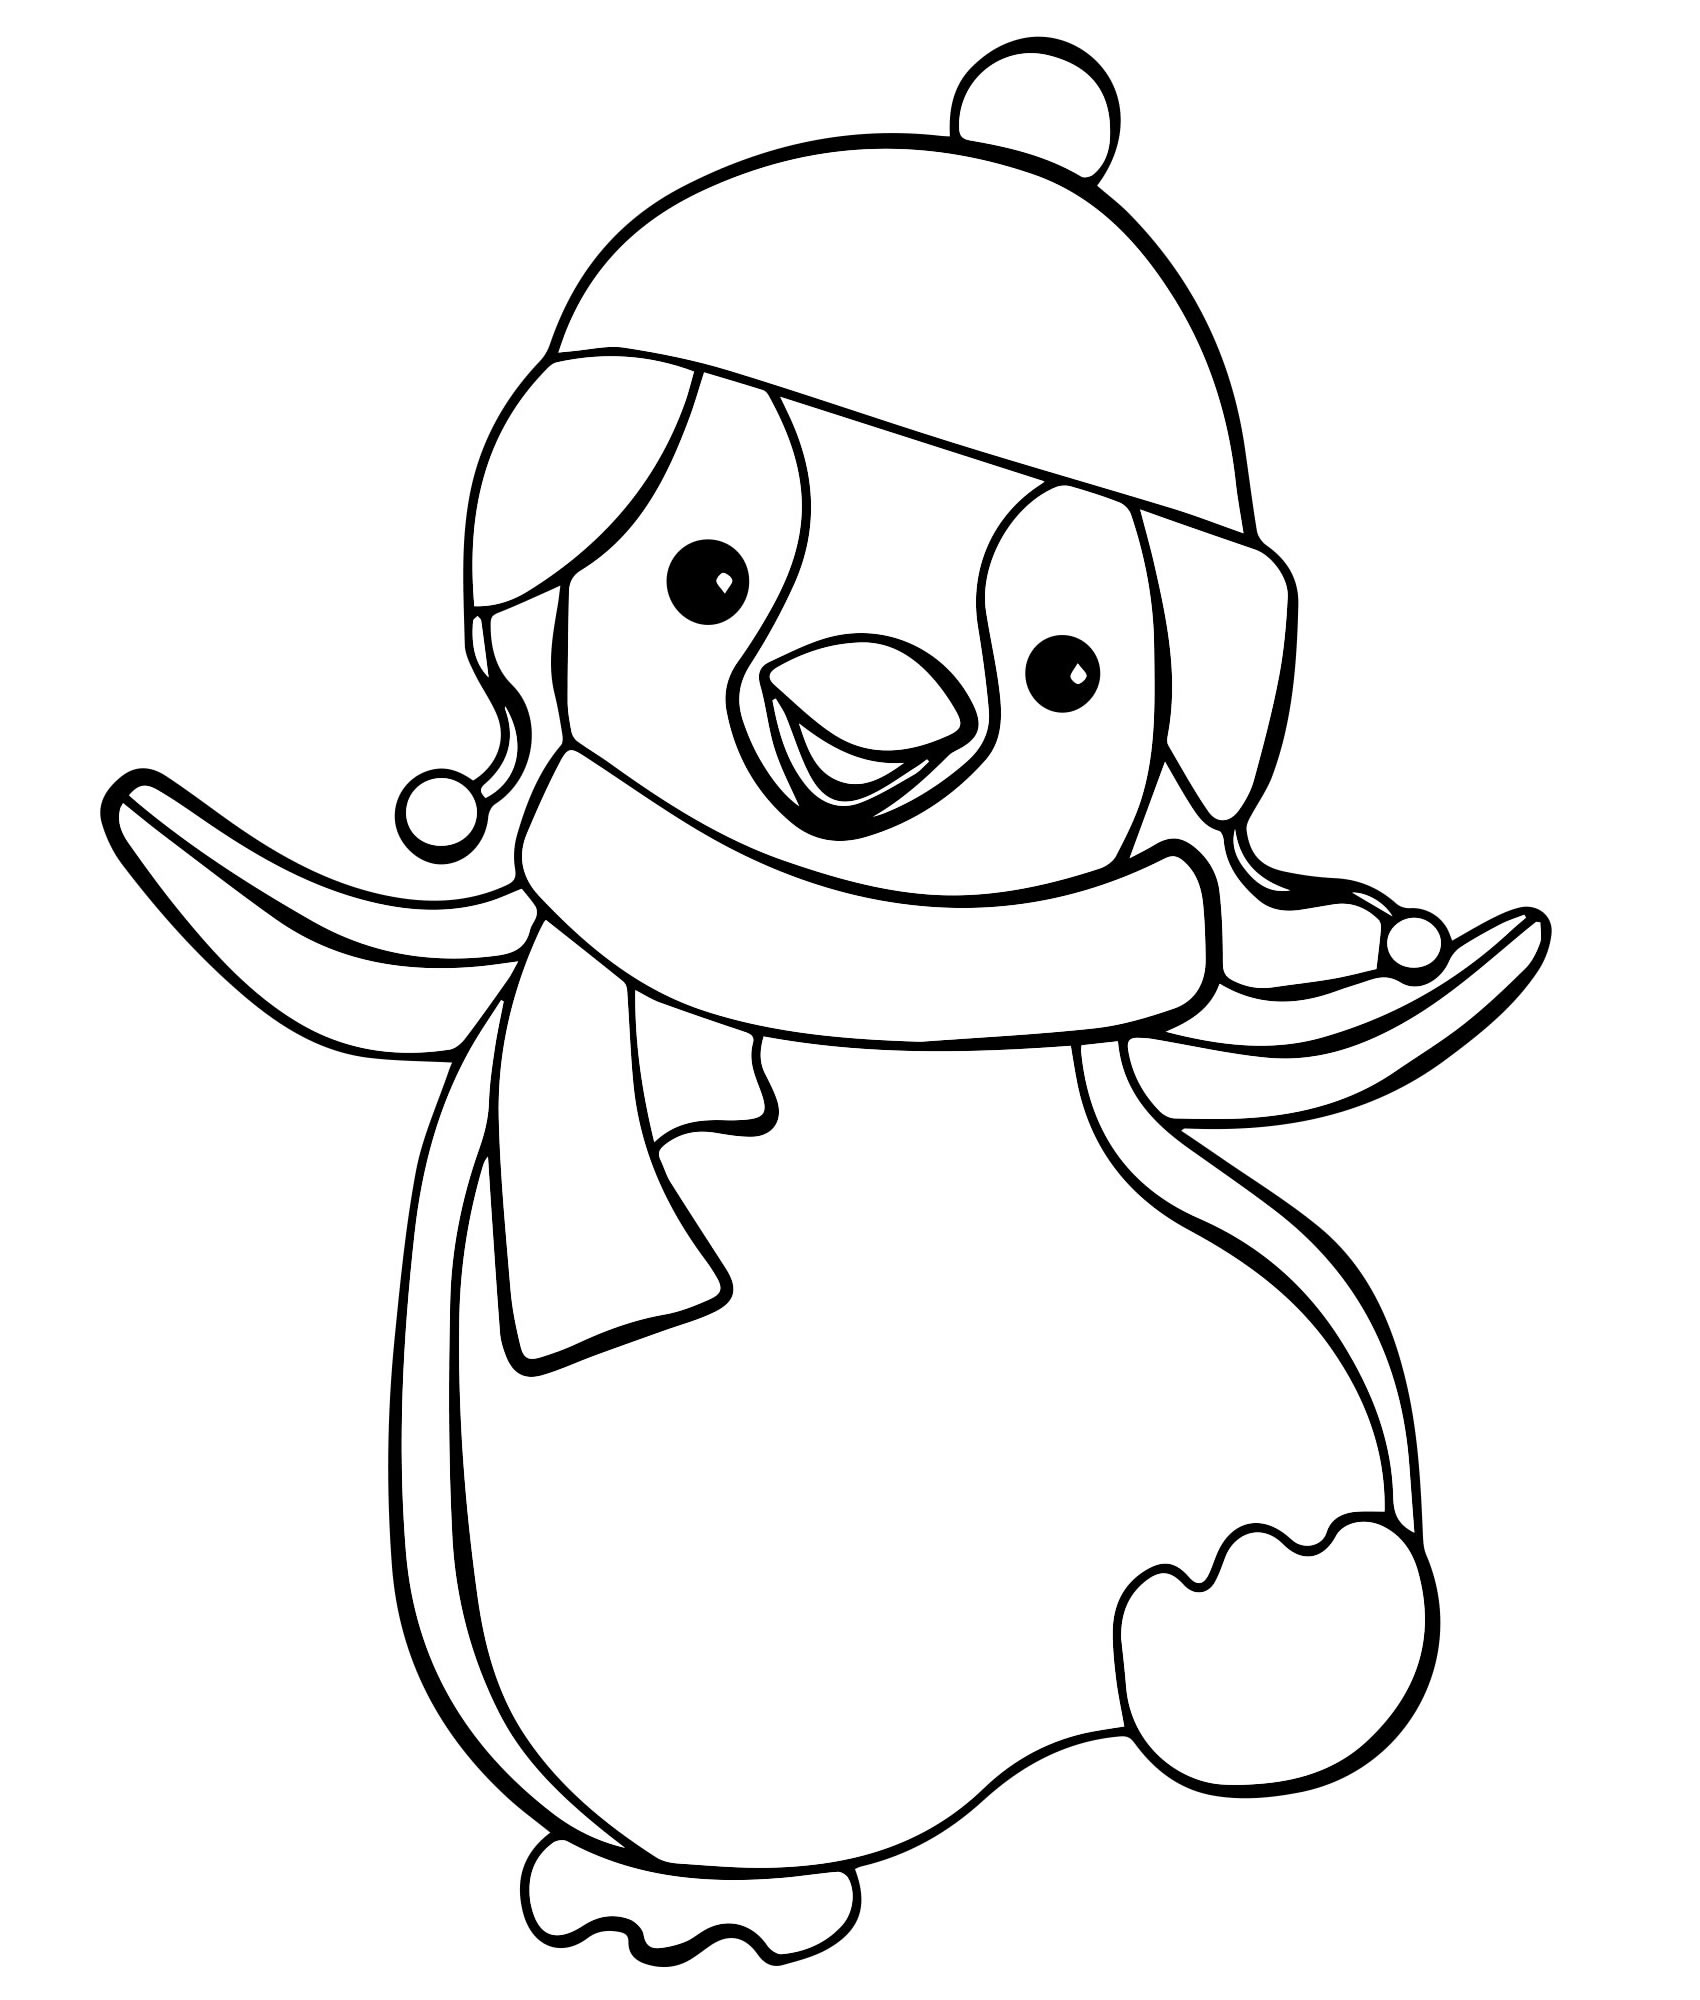 Смешной пингвин раскраска для детей